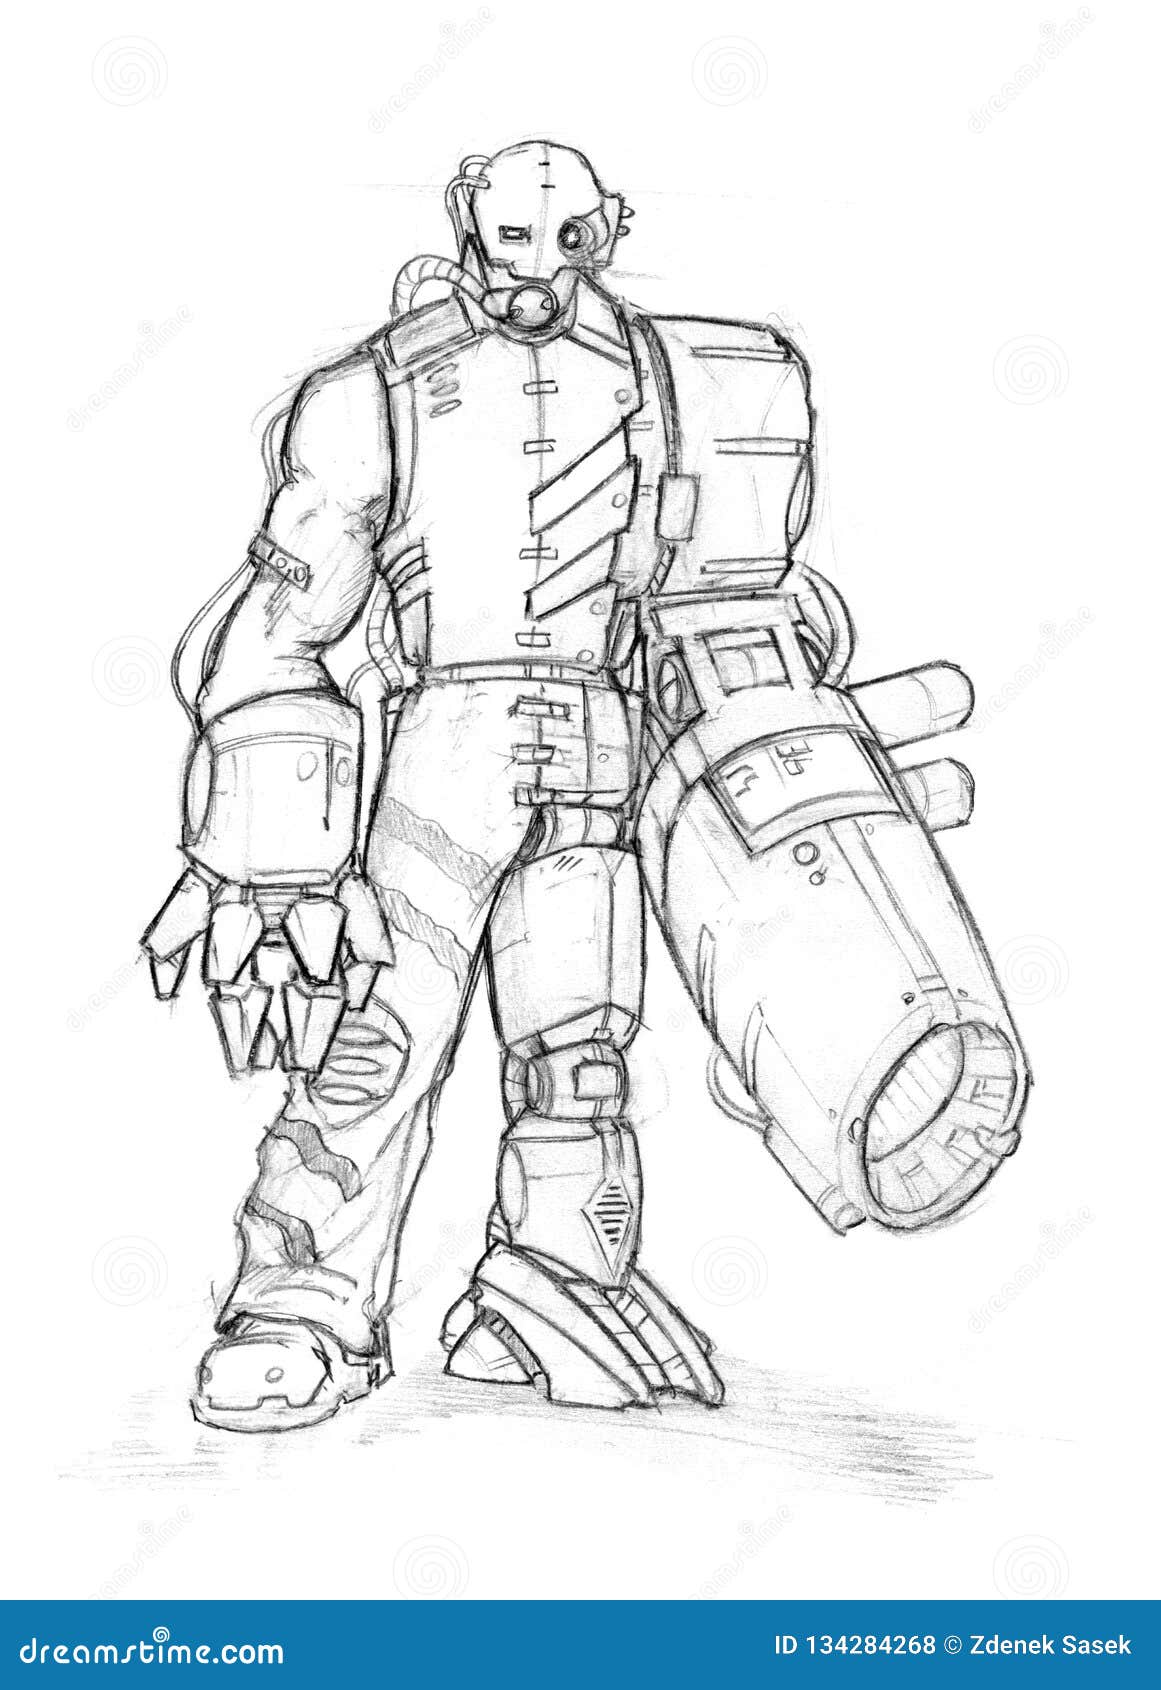 Black Grunge Rough Ink Sketch of Robot Stock Illustration